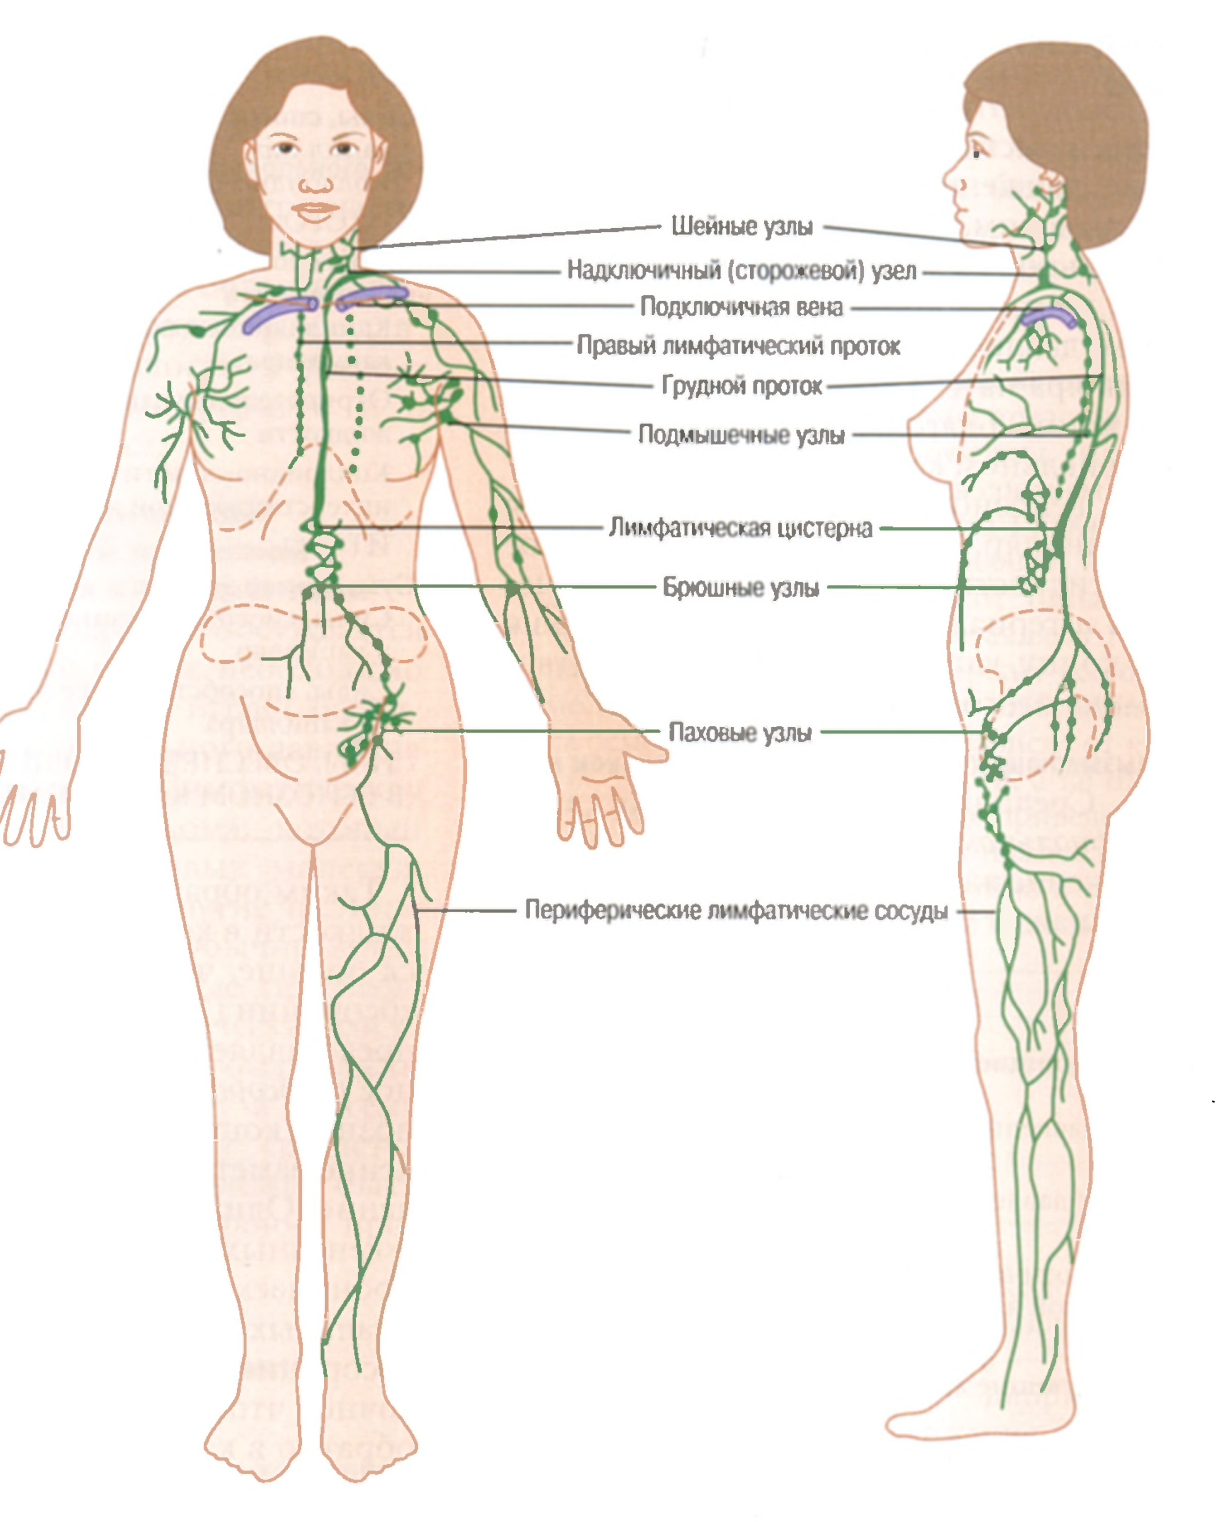 Лимфоузлы внутри. Где находятся лимфатические узлы. Лимфатические узлы схема расположения. Лимфоузлы на теле человека схема. Где находятся лимфоузлы на теле человека расположение схема.